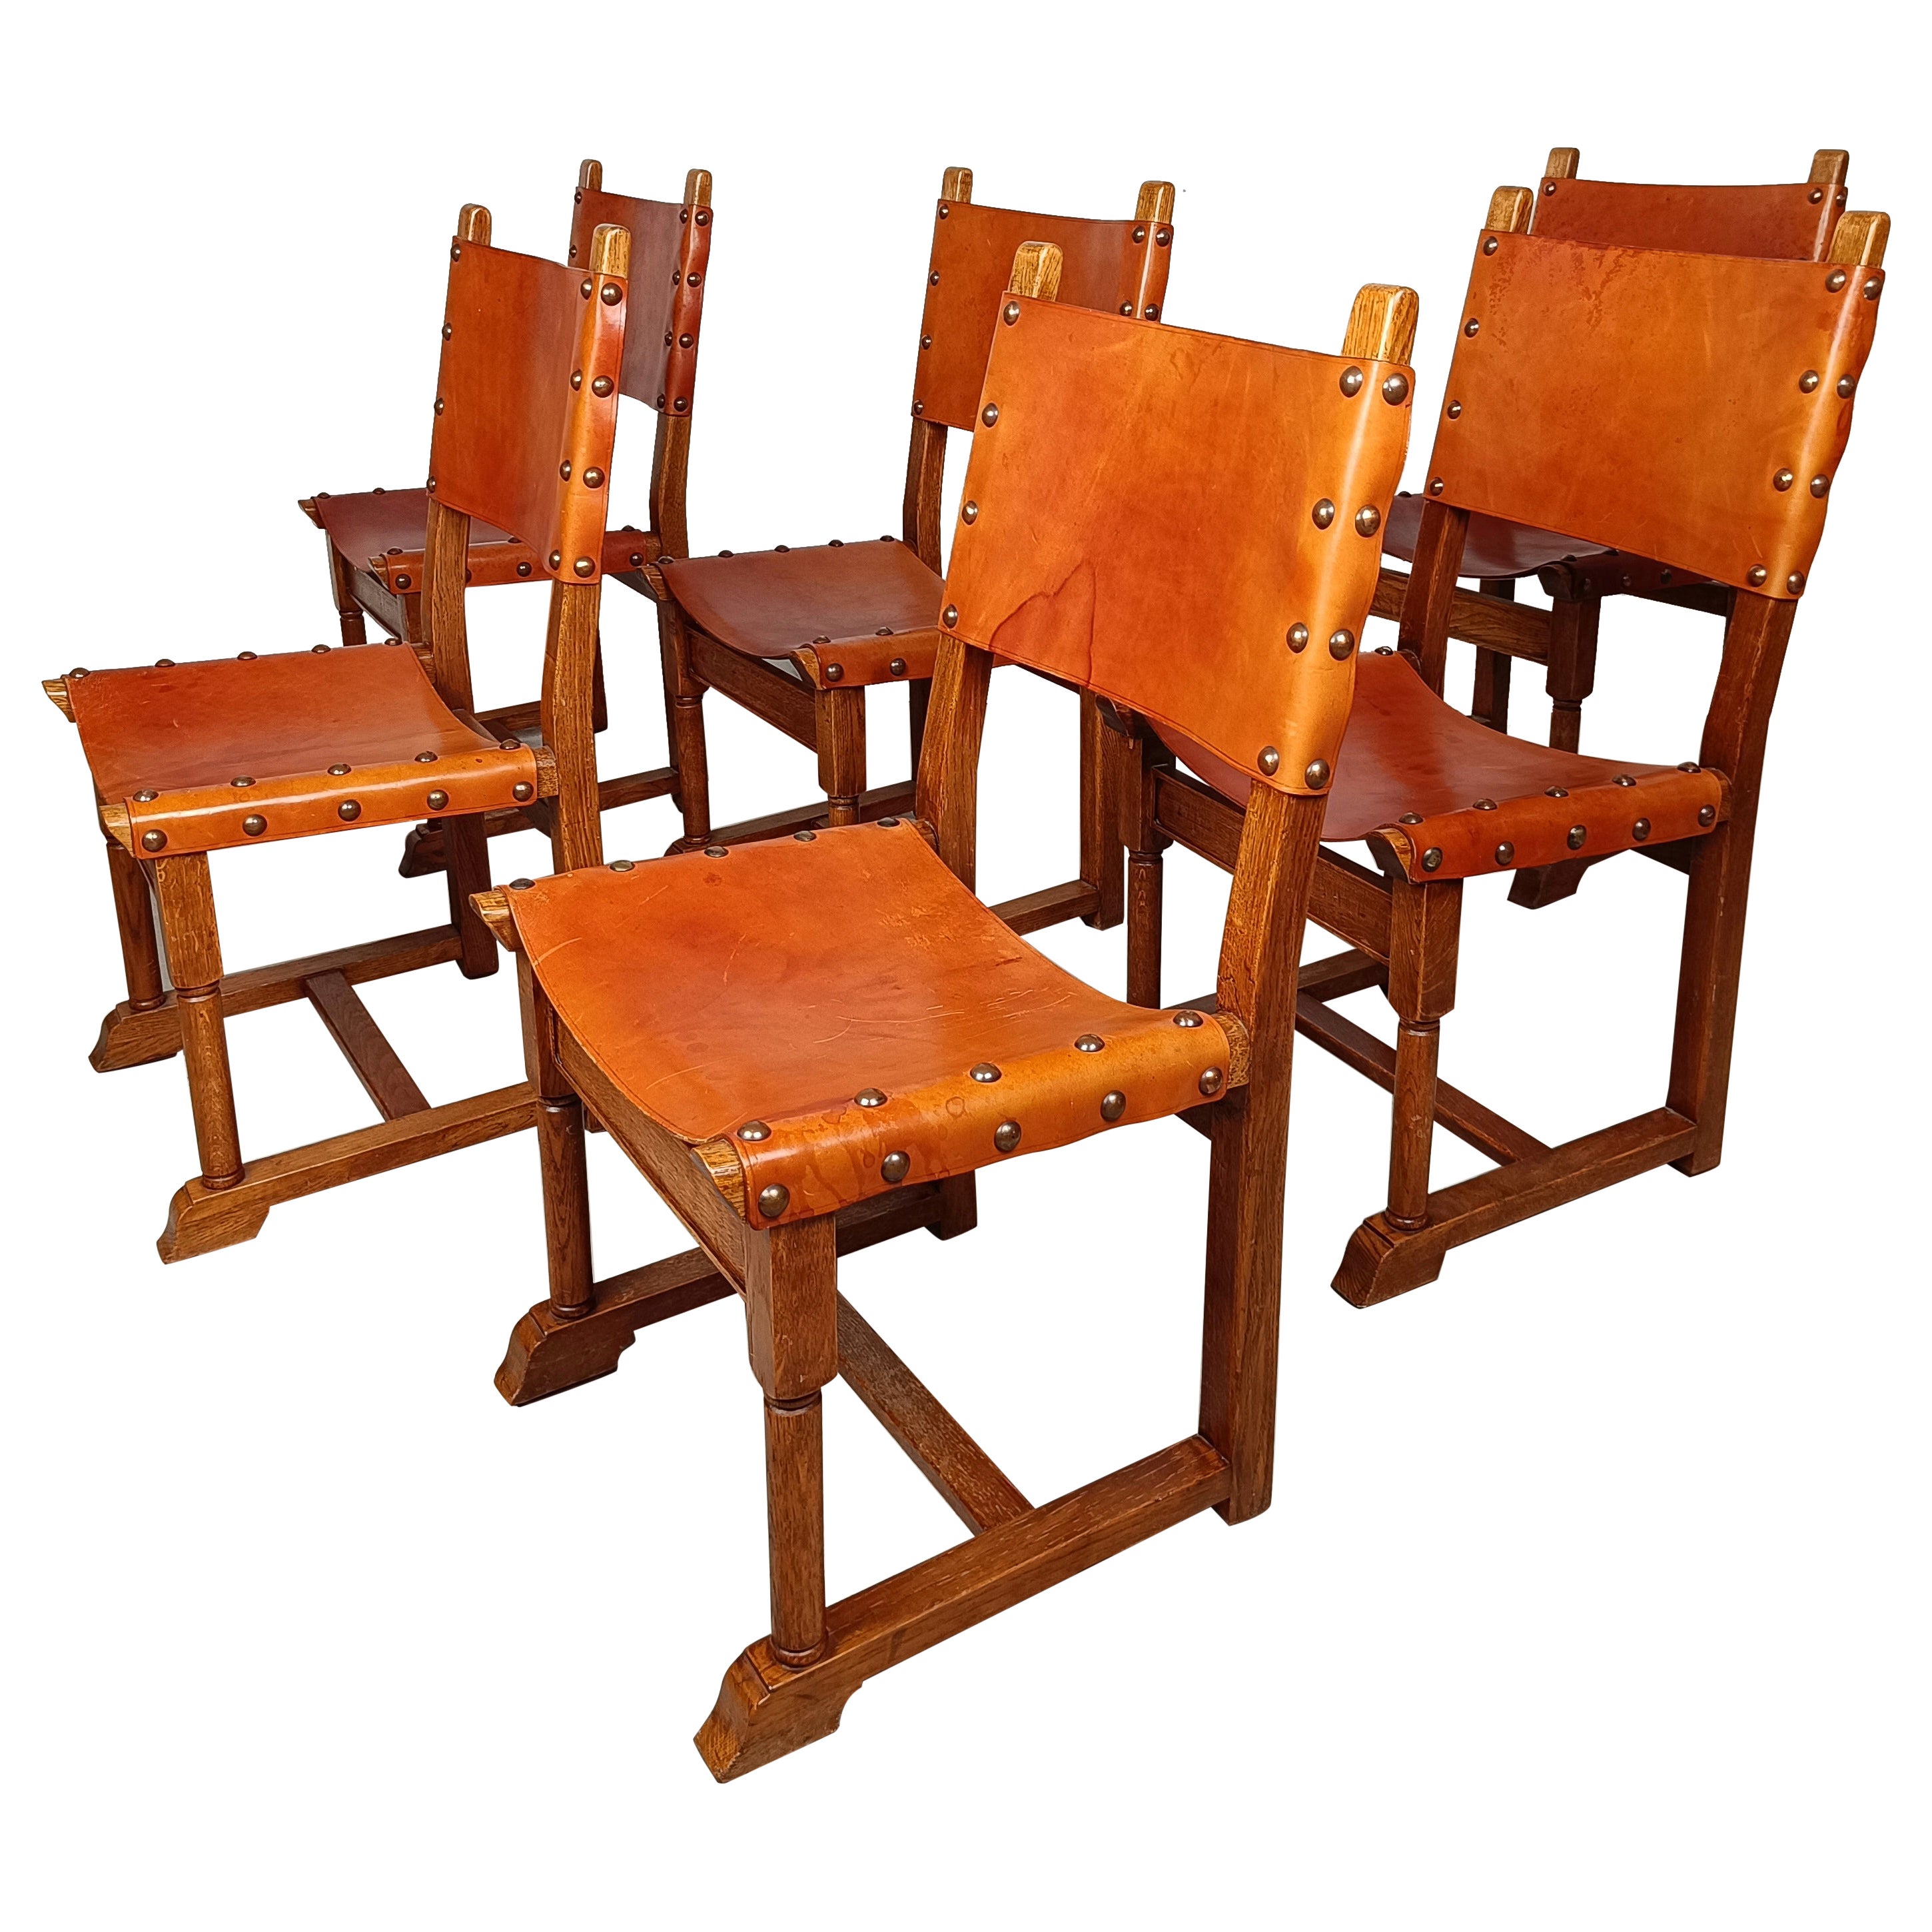 Ensemble de six chaises italiennes rustiques en cuir clouté cognac et bois de chêne massif 